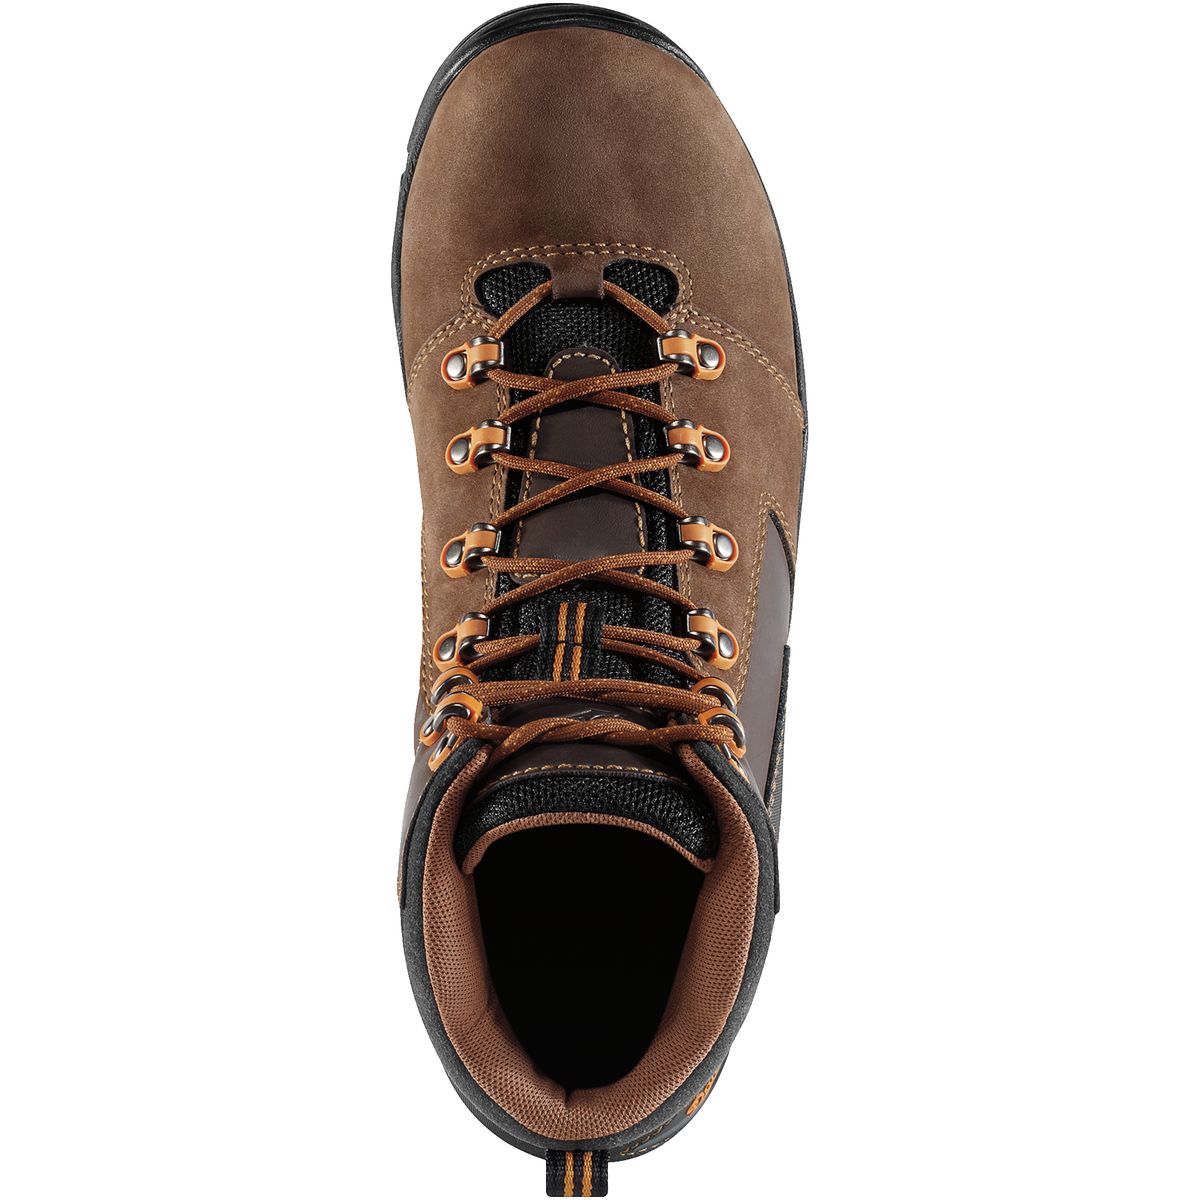 Danner Vicious 4.5in Hiking Boot - Men's - Footwear